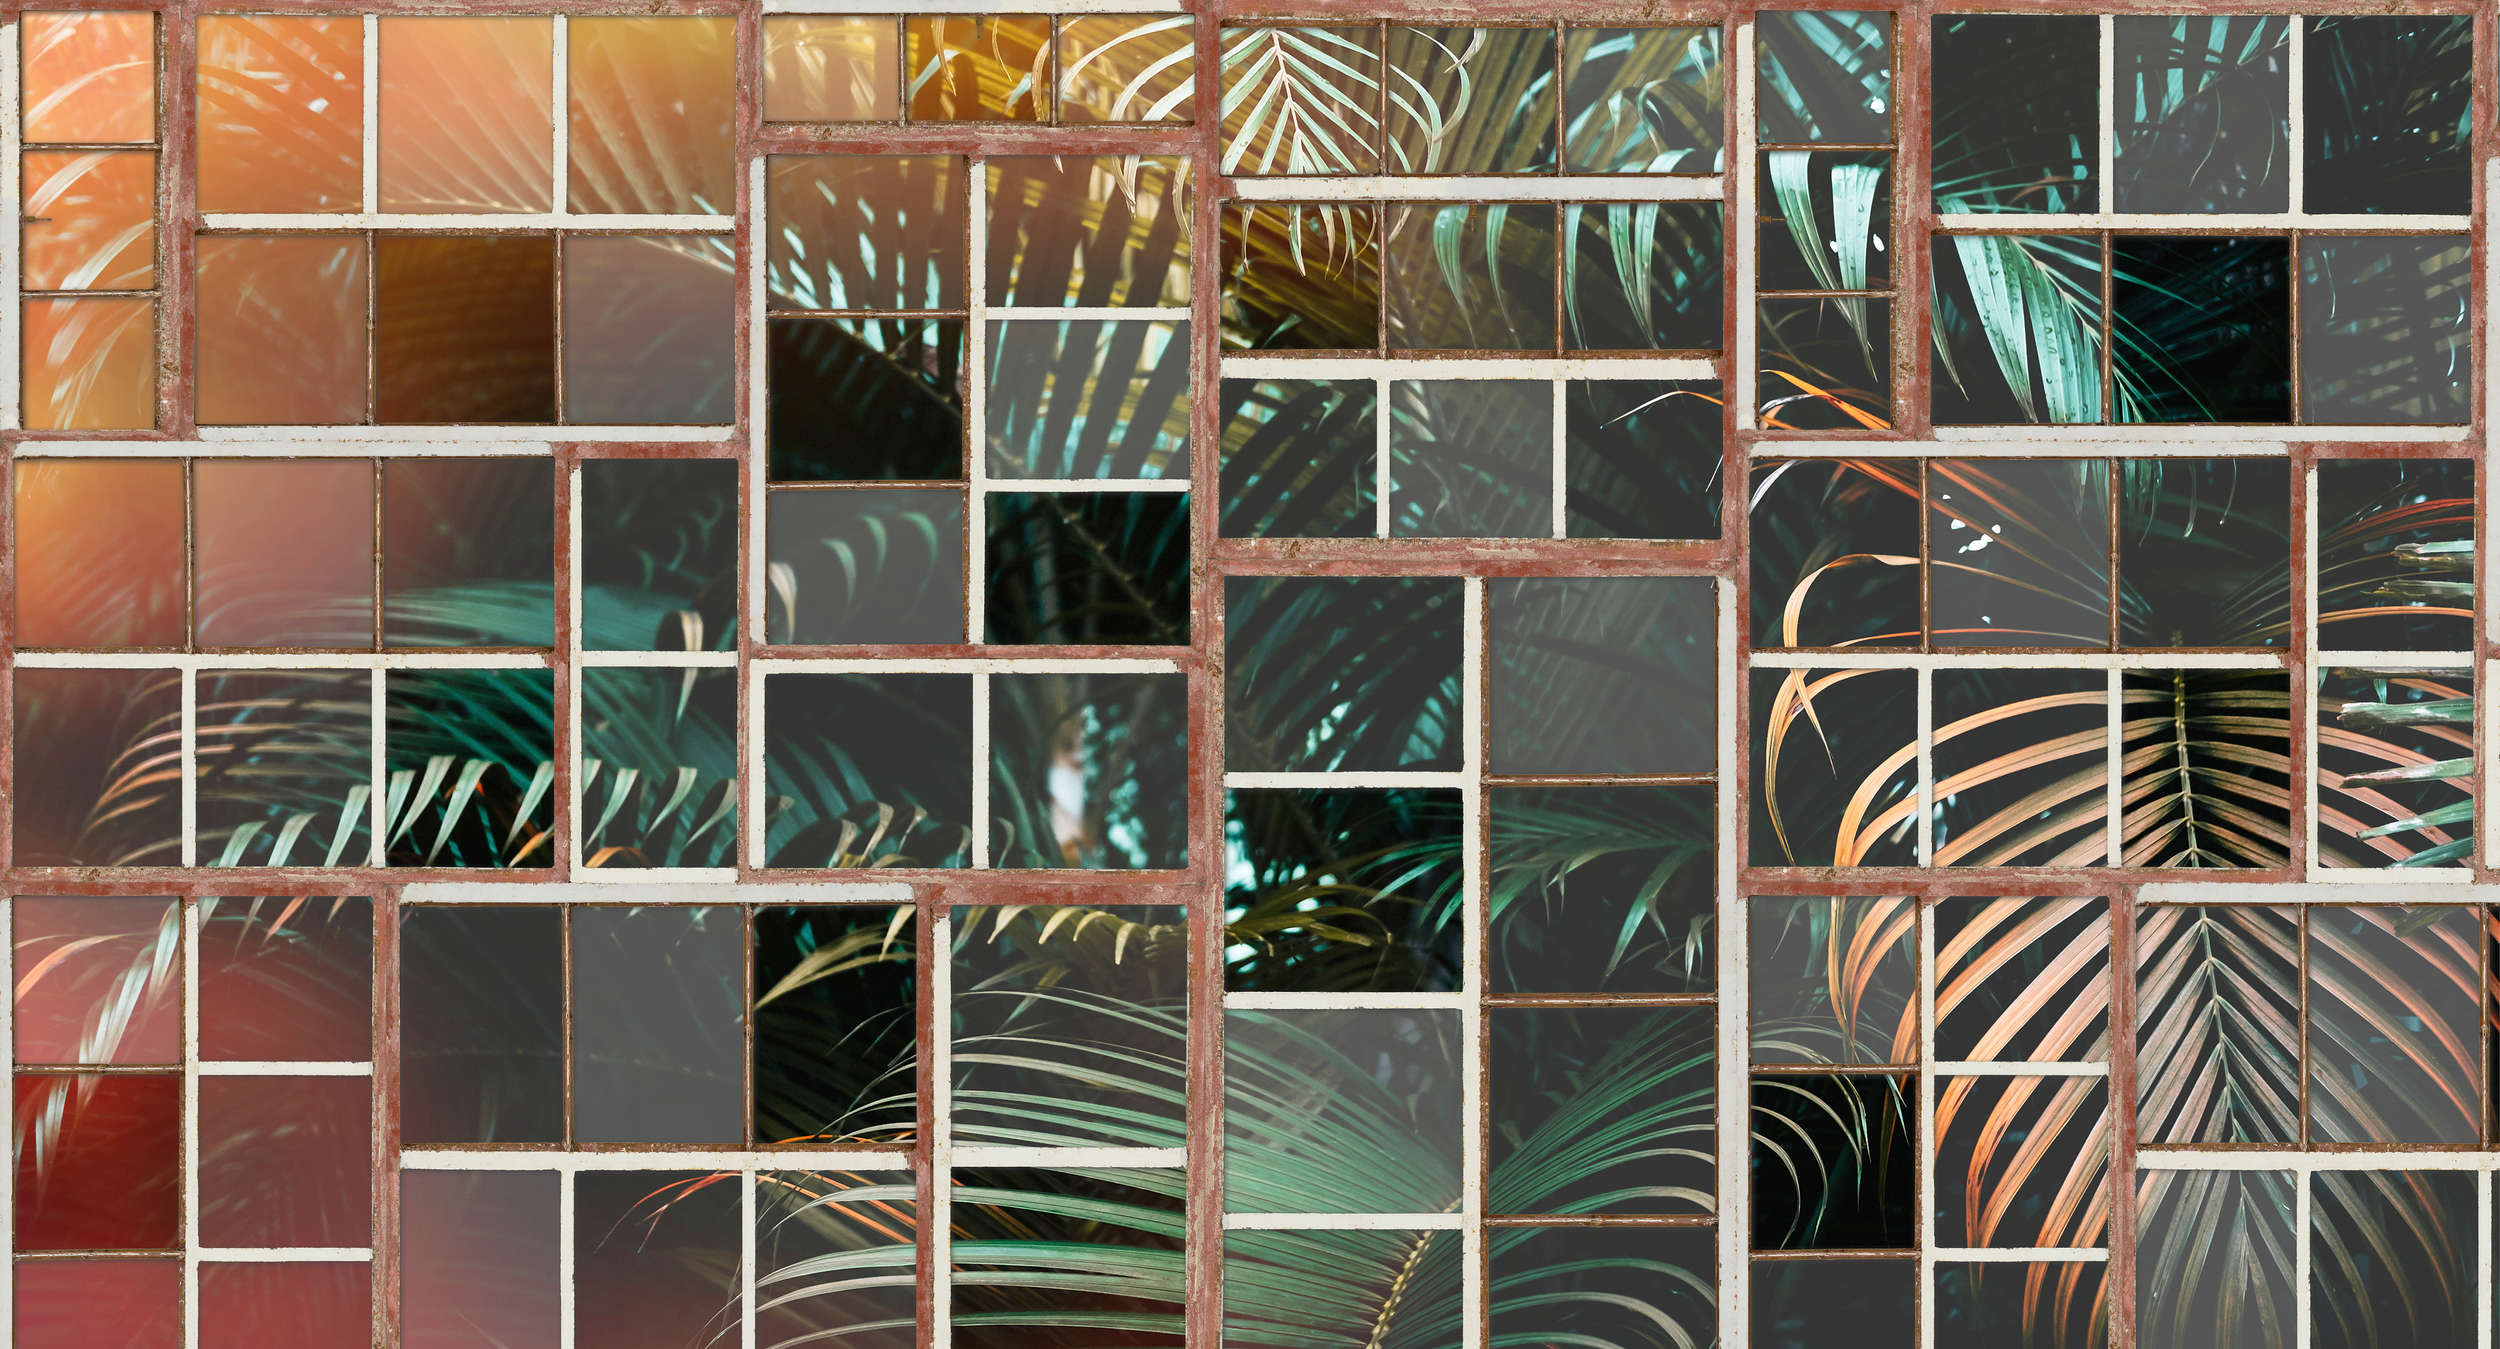             Papier peint avec vue, fenêtre rétro & fougères - marron, blanc, vert
        